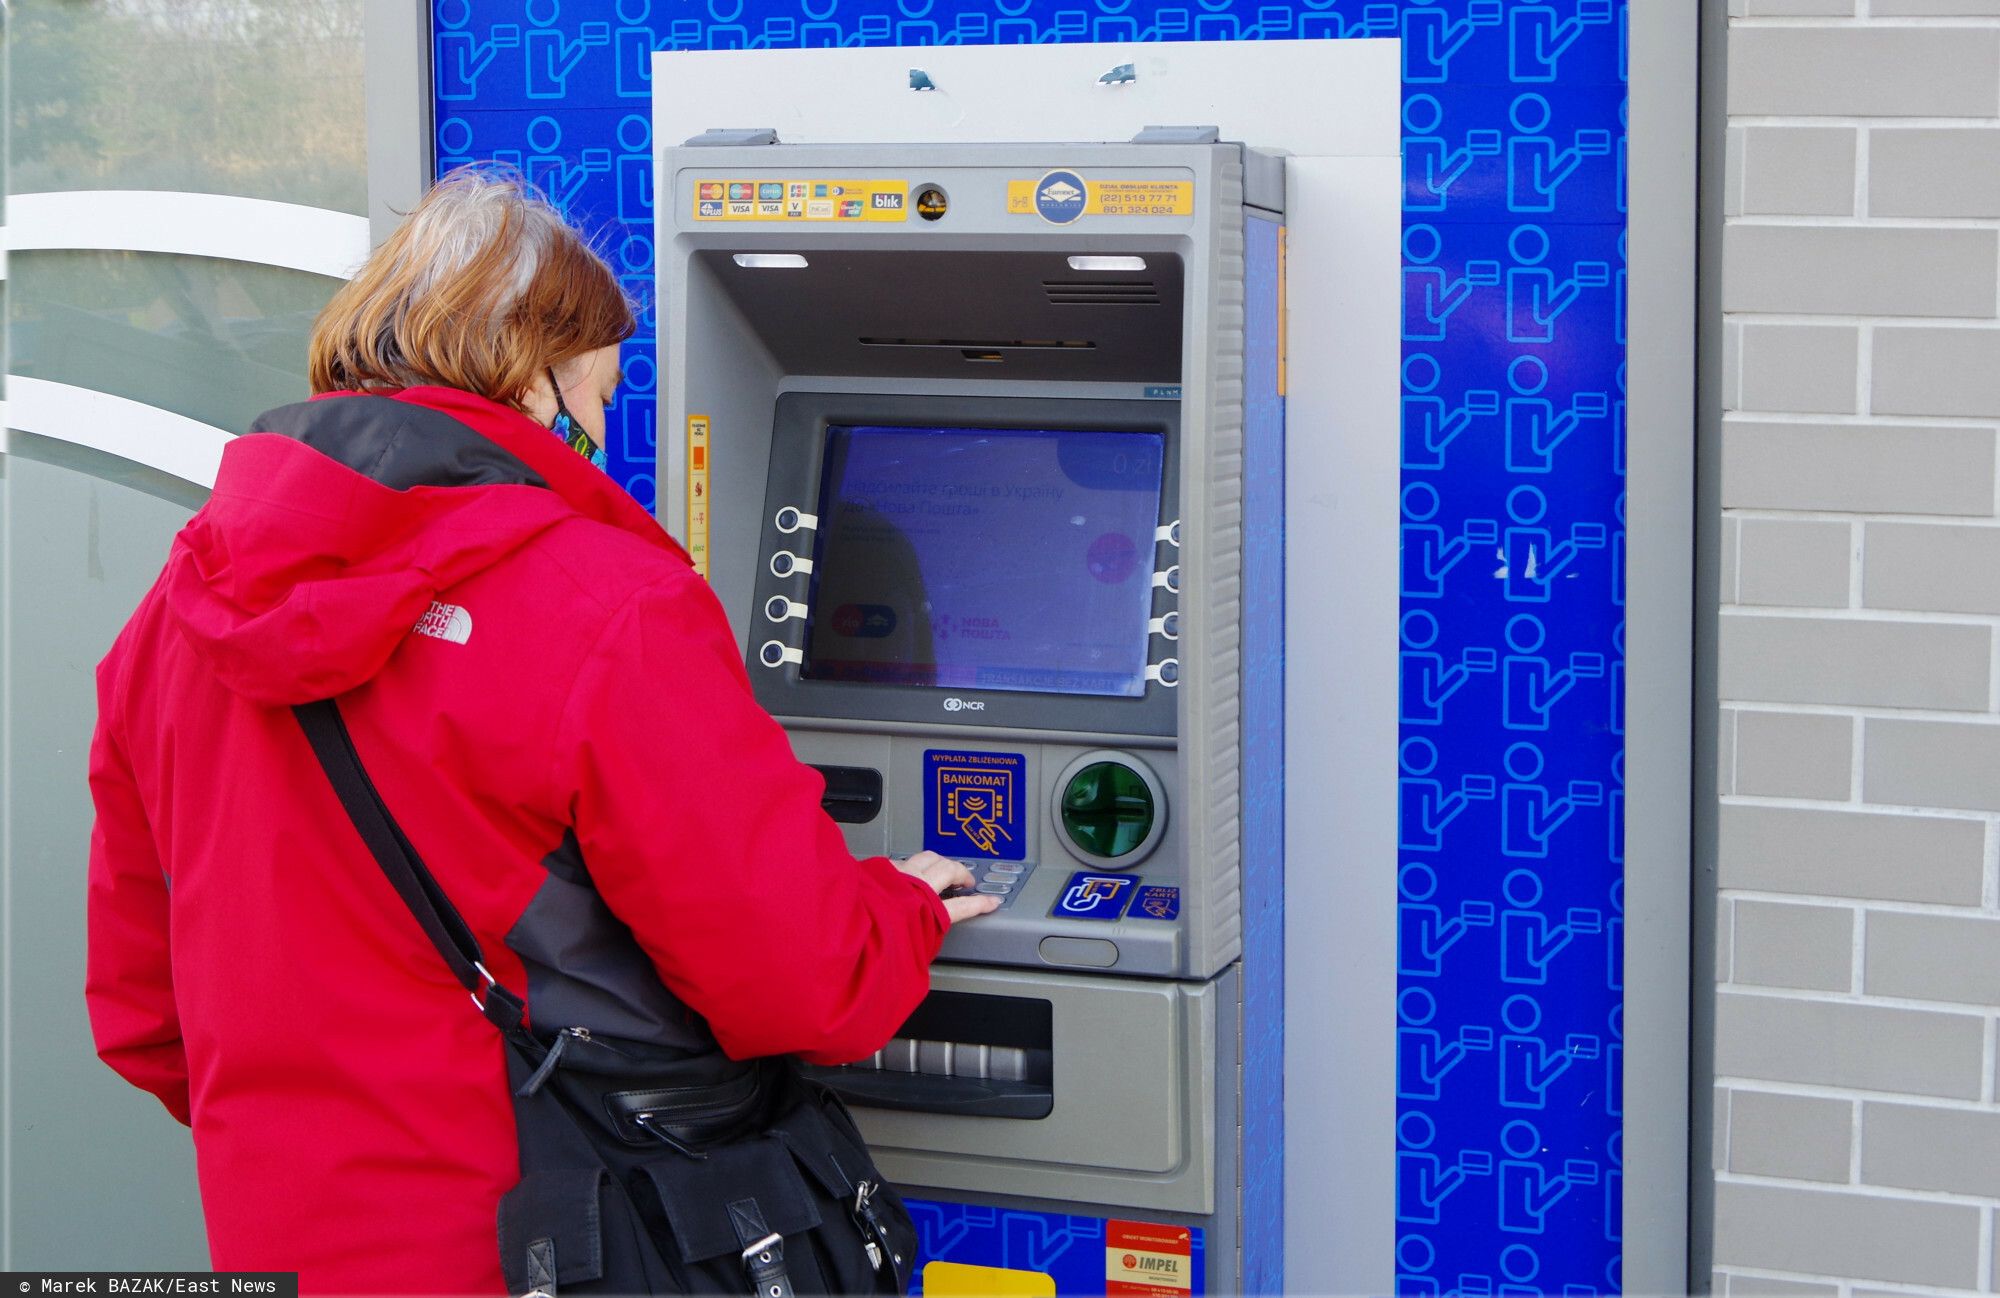 Kobieta wypłaca środki pieniężne z bankomatu - materiał ilustracyjny